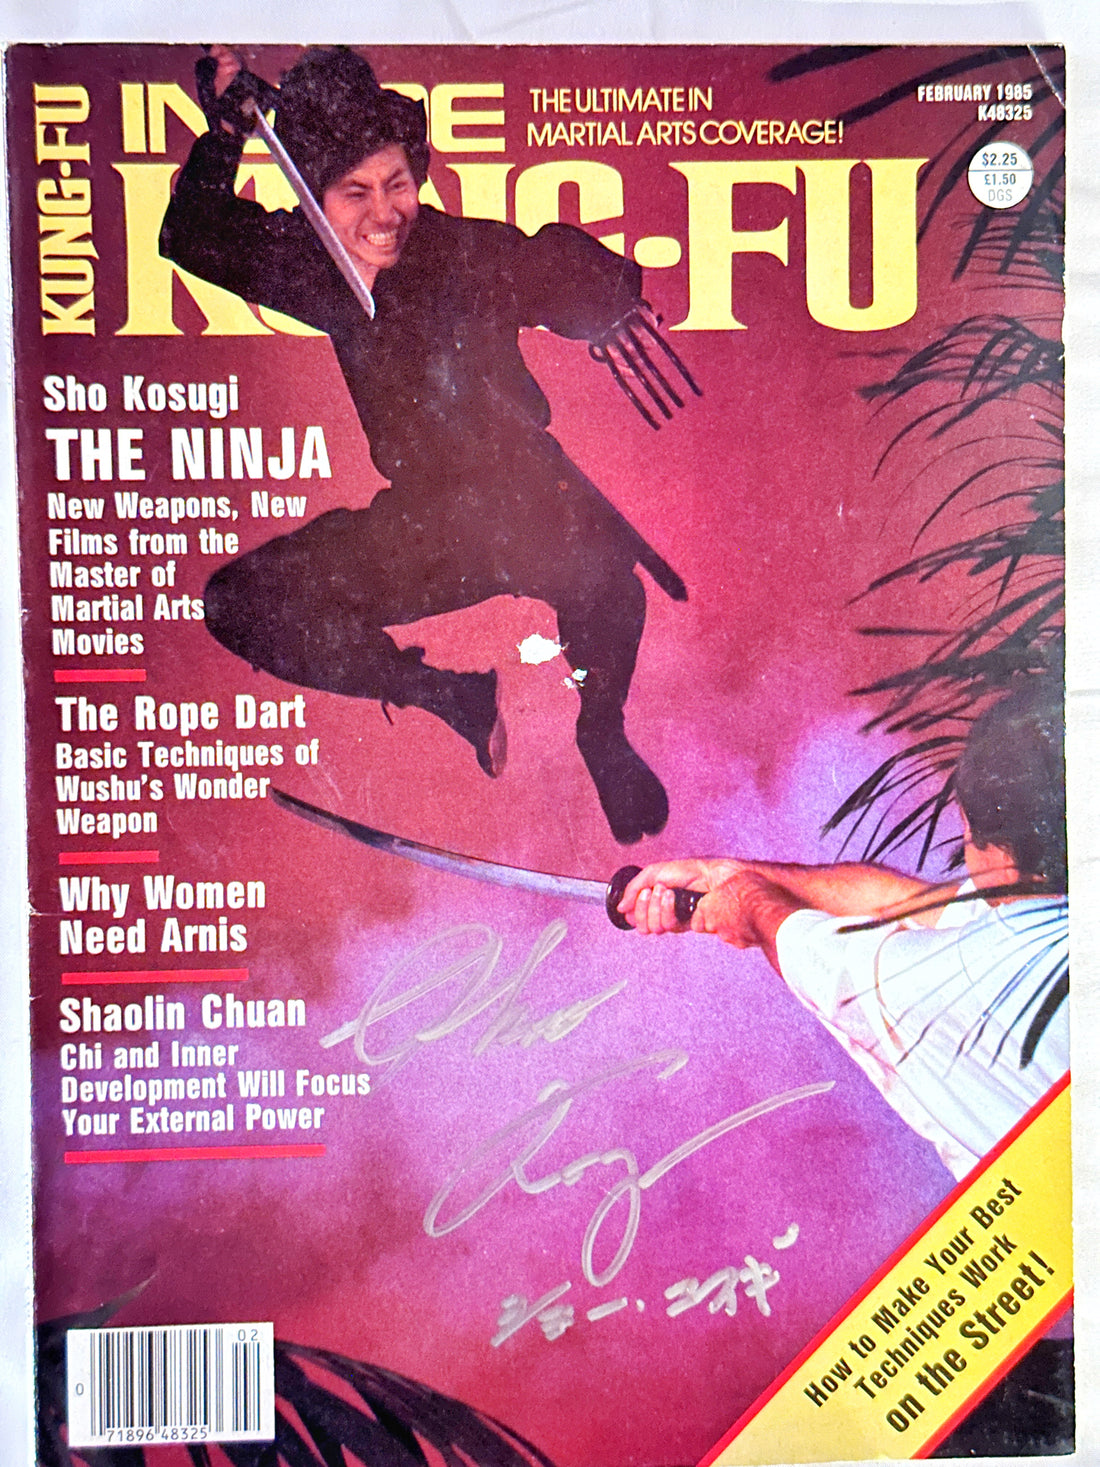 Sho Kosugi Autographed "INSIDE KUNG FU" February 1985